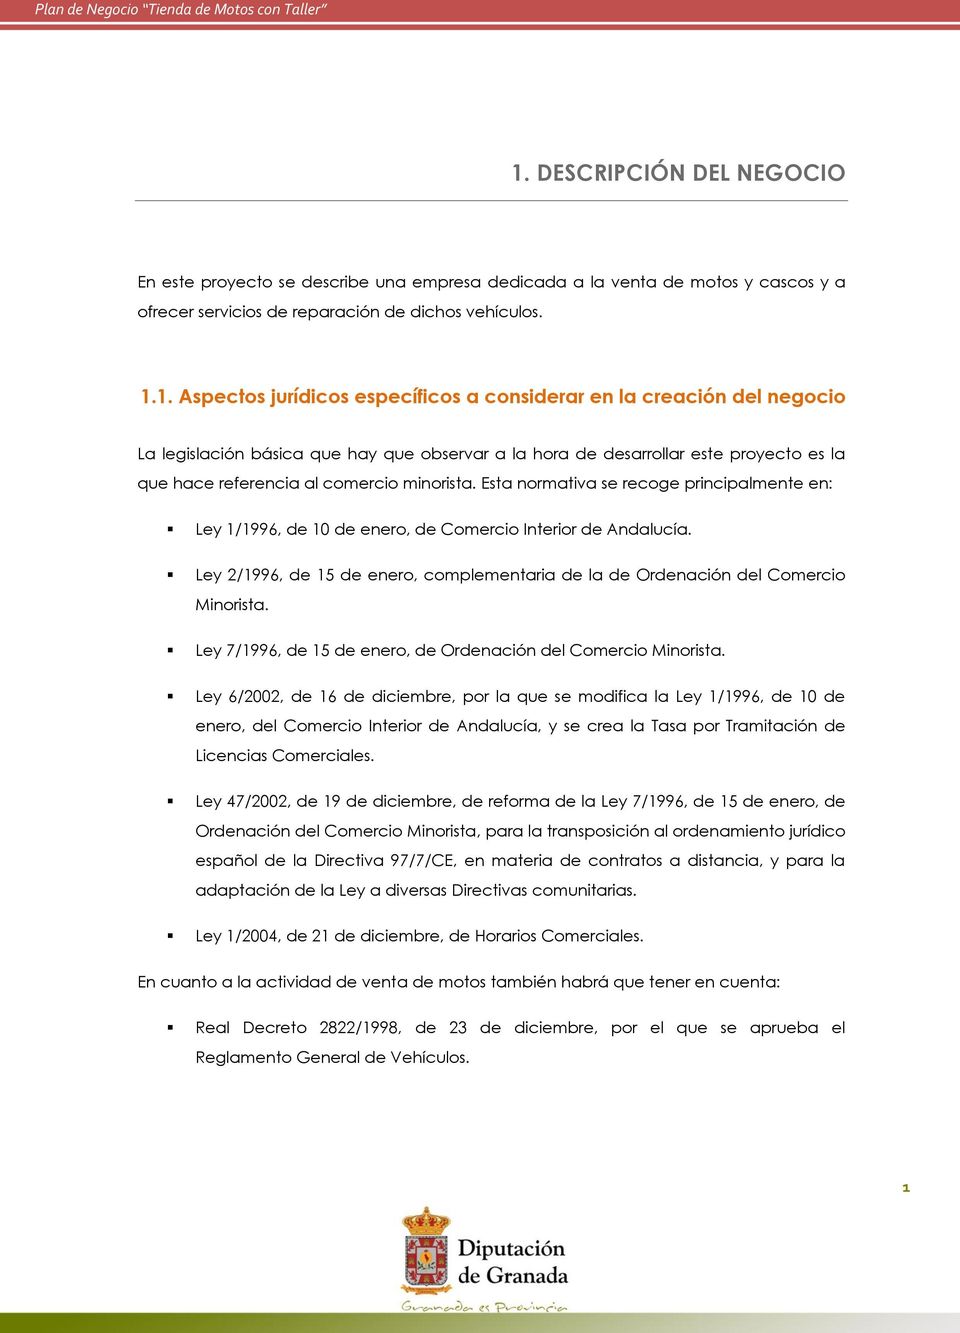 Esta normativa se recoge principalmente en: Ley 1/1996, de 10 de enero, de Comercio Interior de Andalucía. Ley 2/1996, de 15 de enero, complementaria de la de Ordenación del Comercio Minorista.